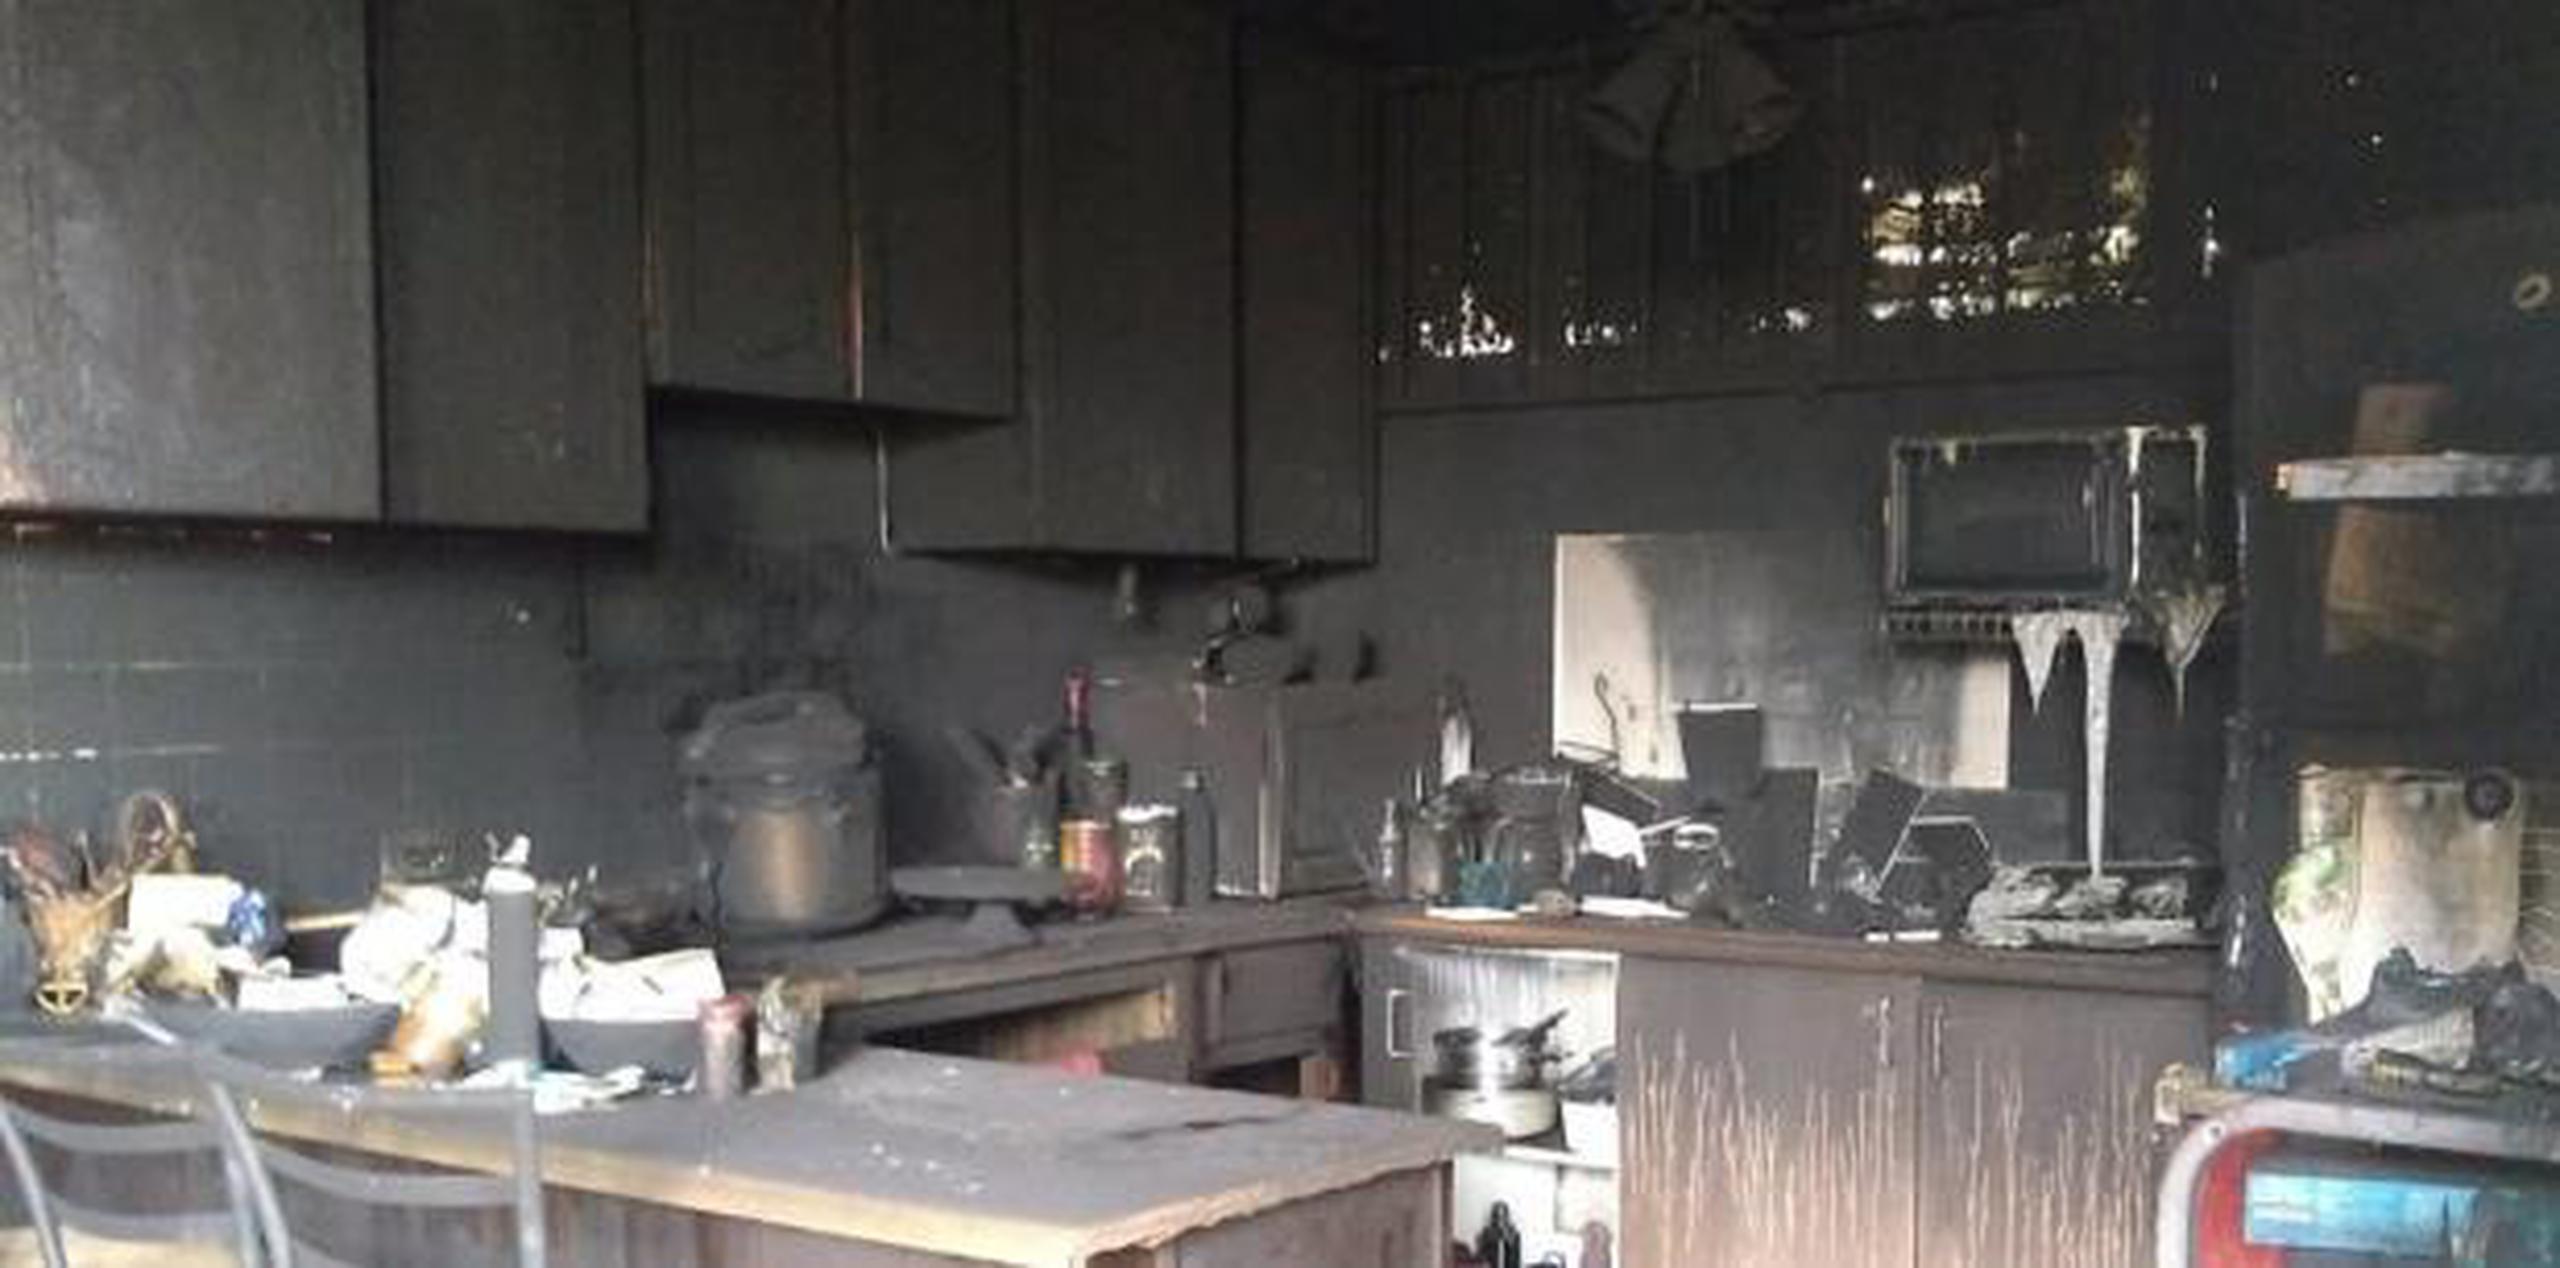 Así quedó la cocina tras el incendio (Suministrada)